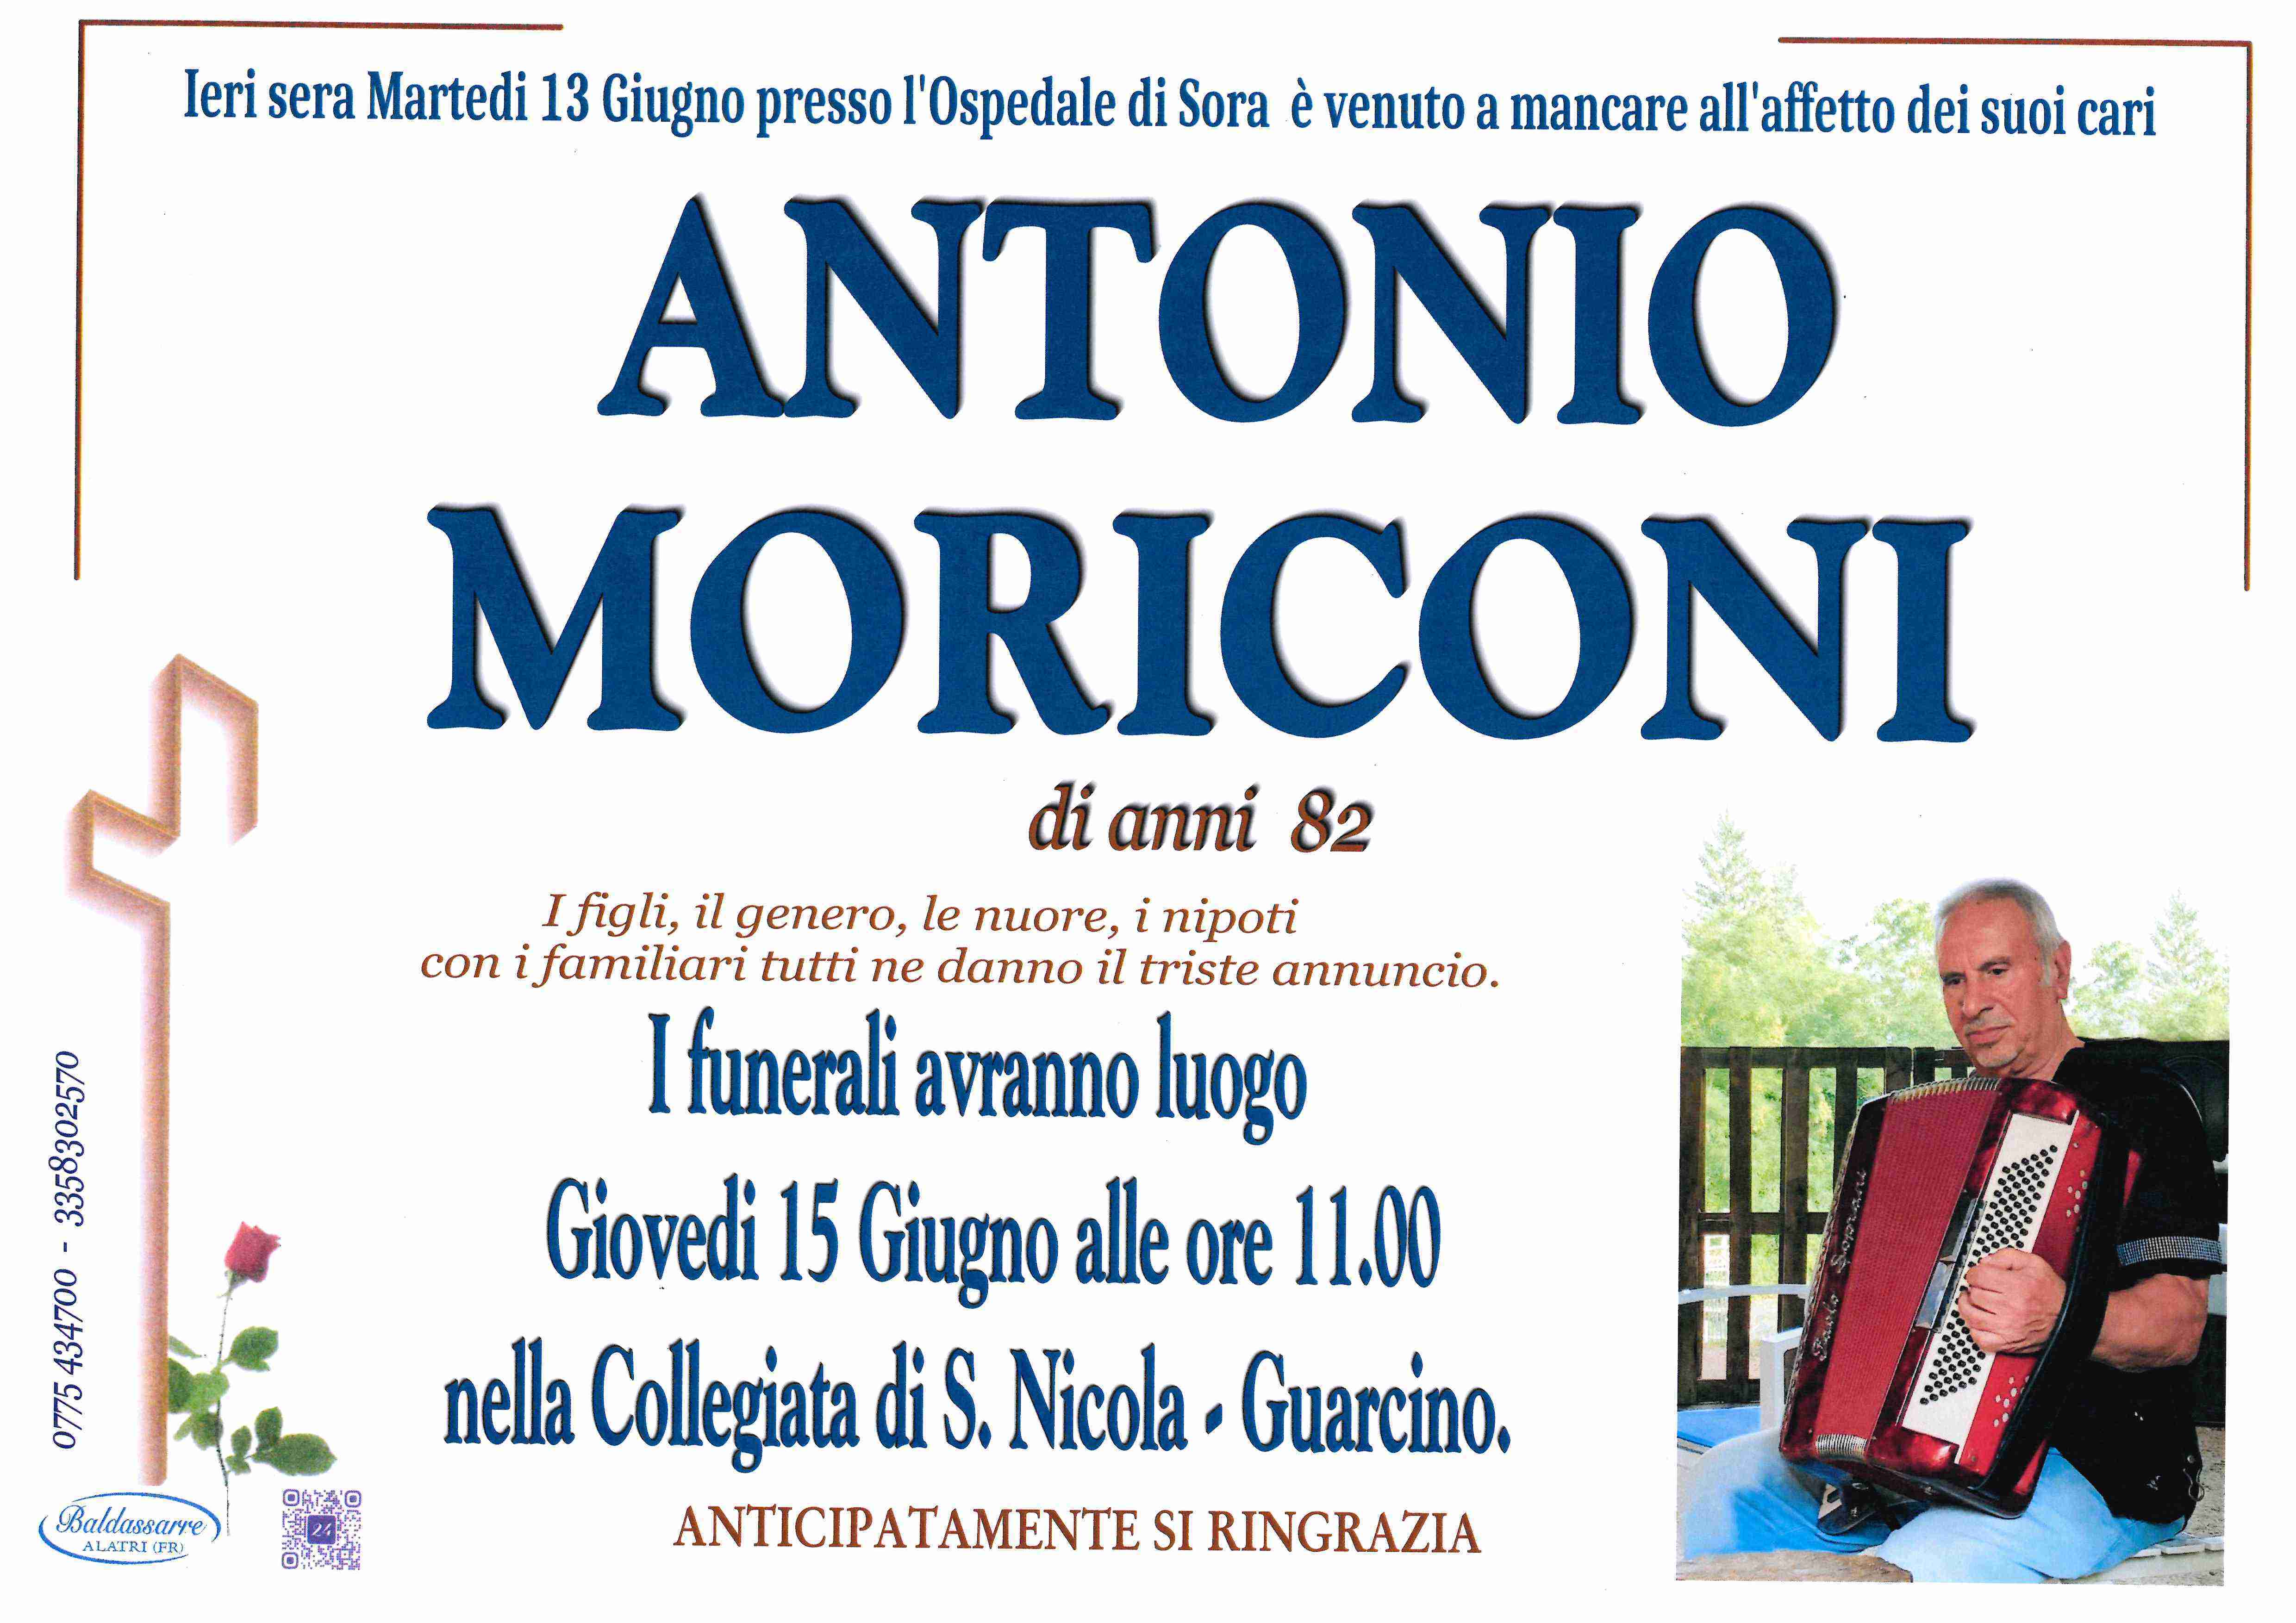 Antonio Moriconi